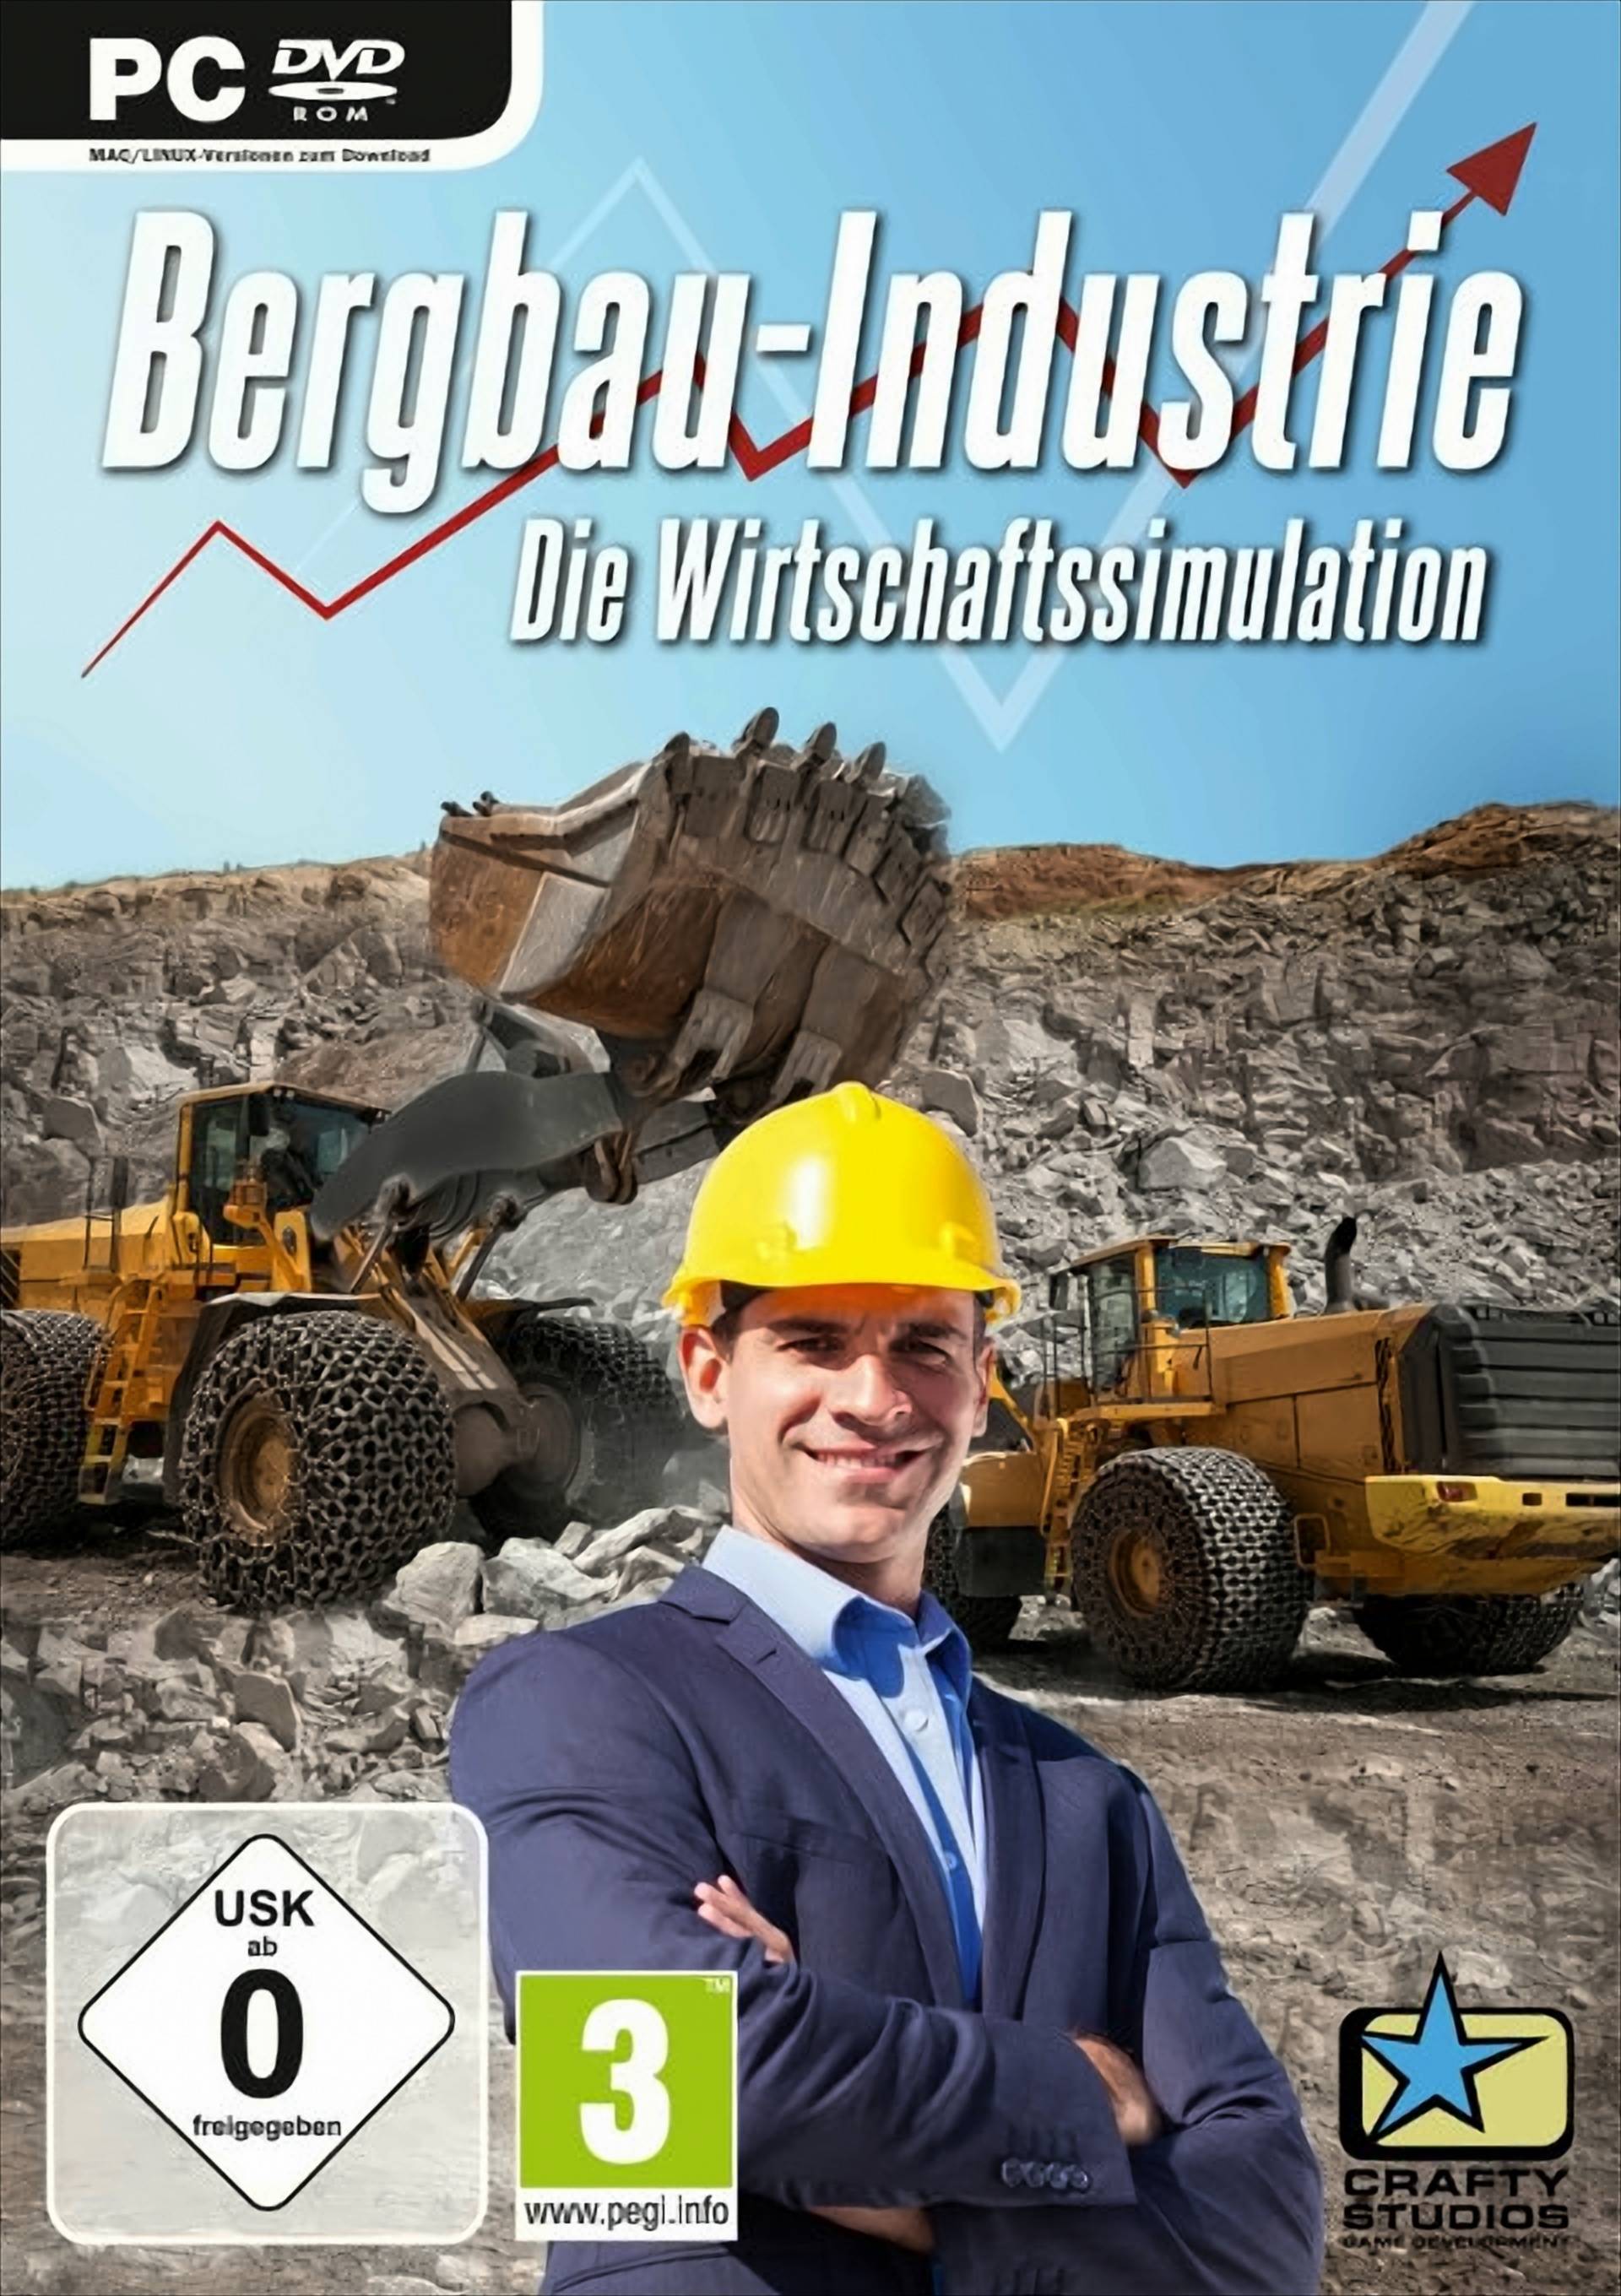 Bergbau-Industrie - Die Wirtschaftssimulation von Koch Media